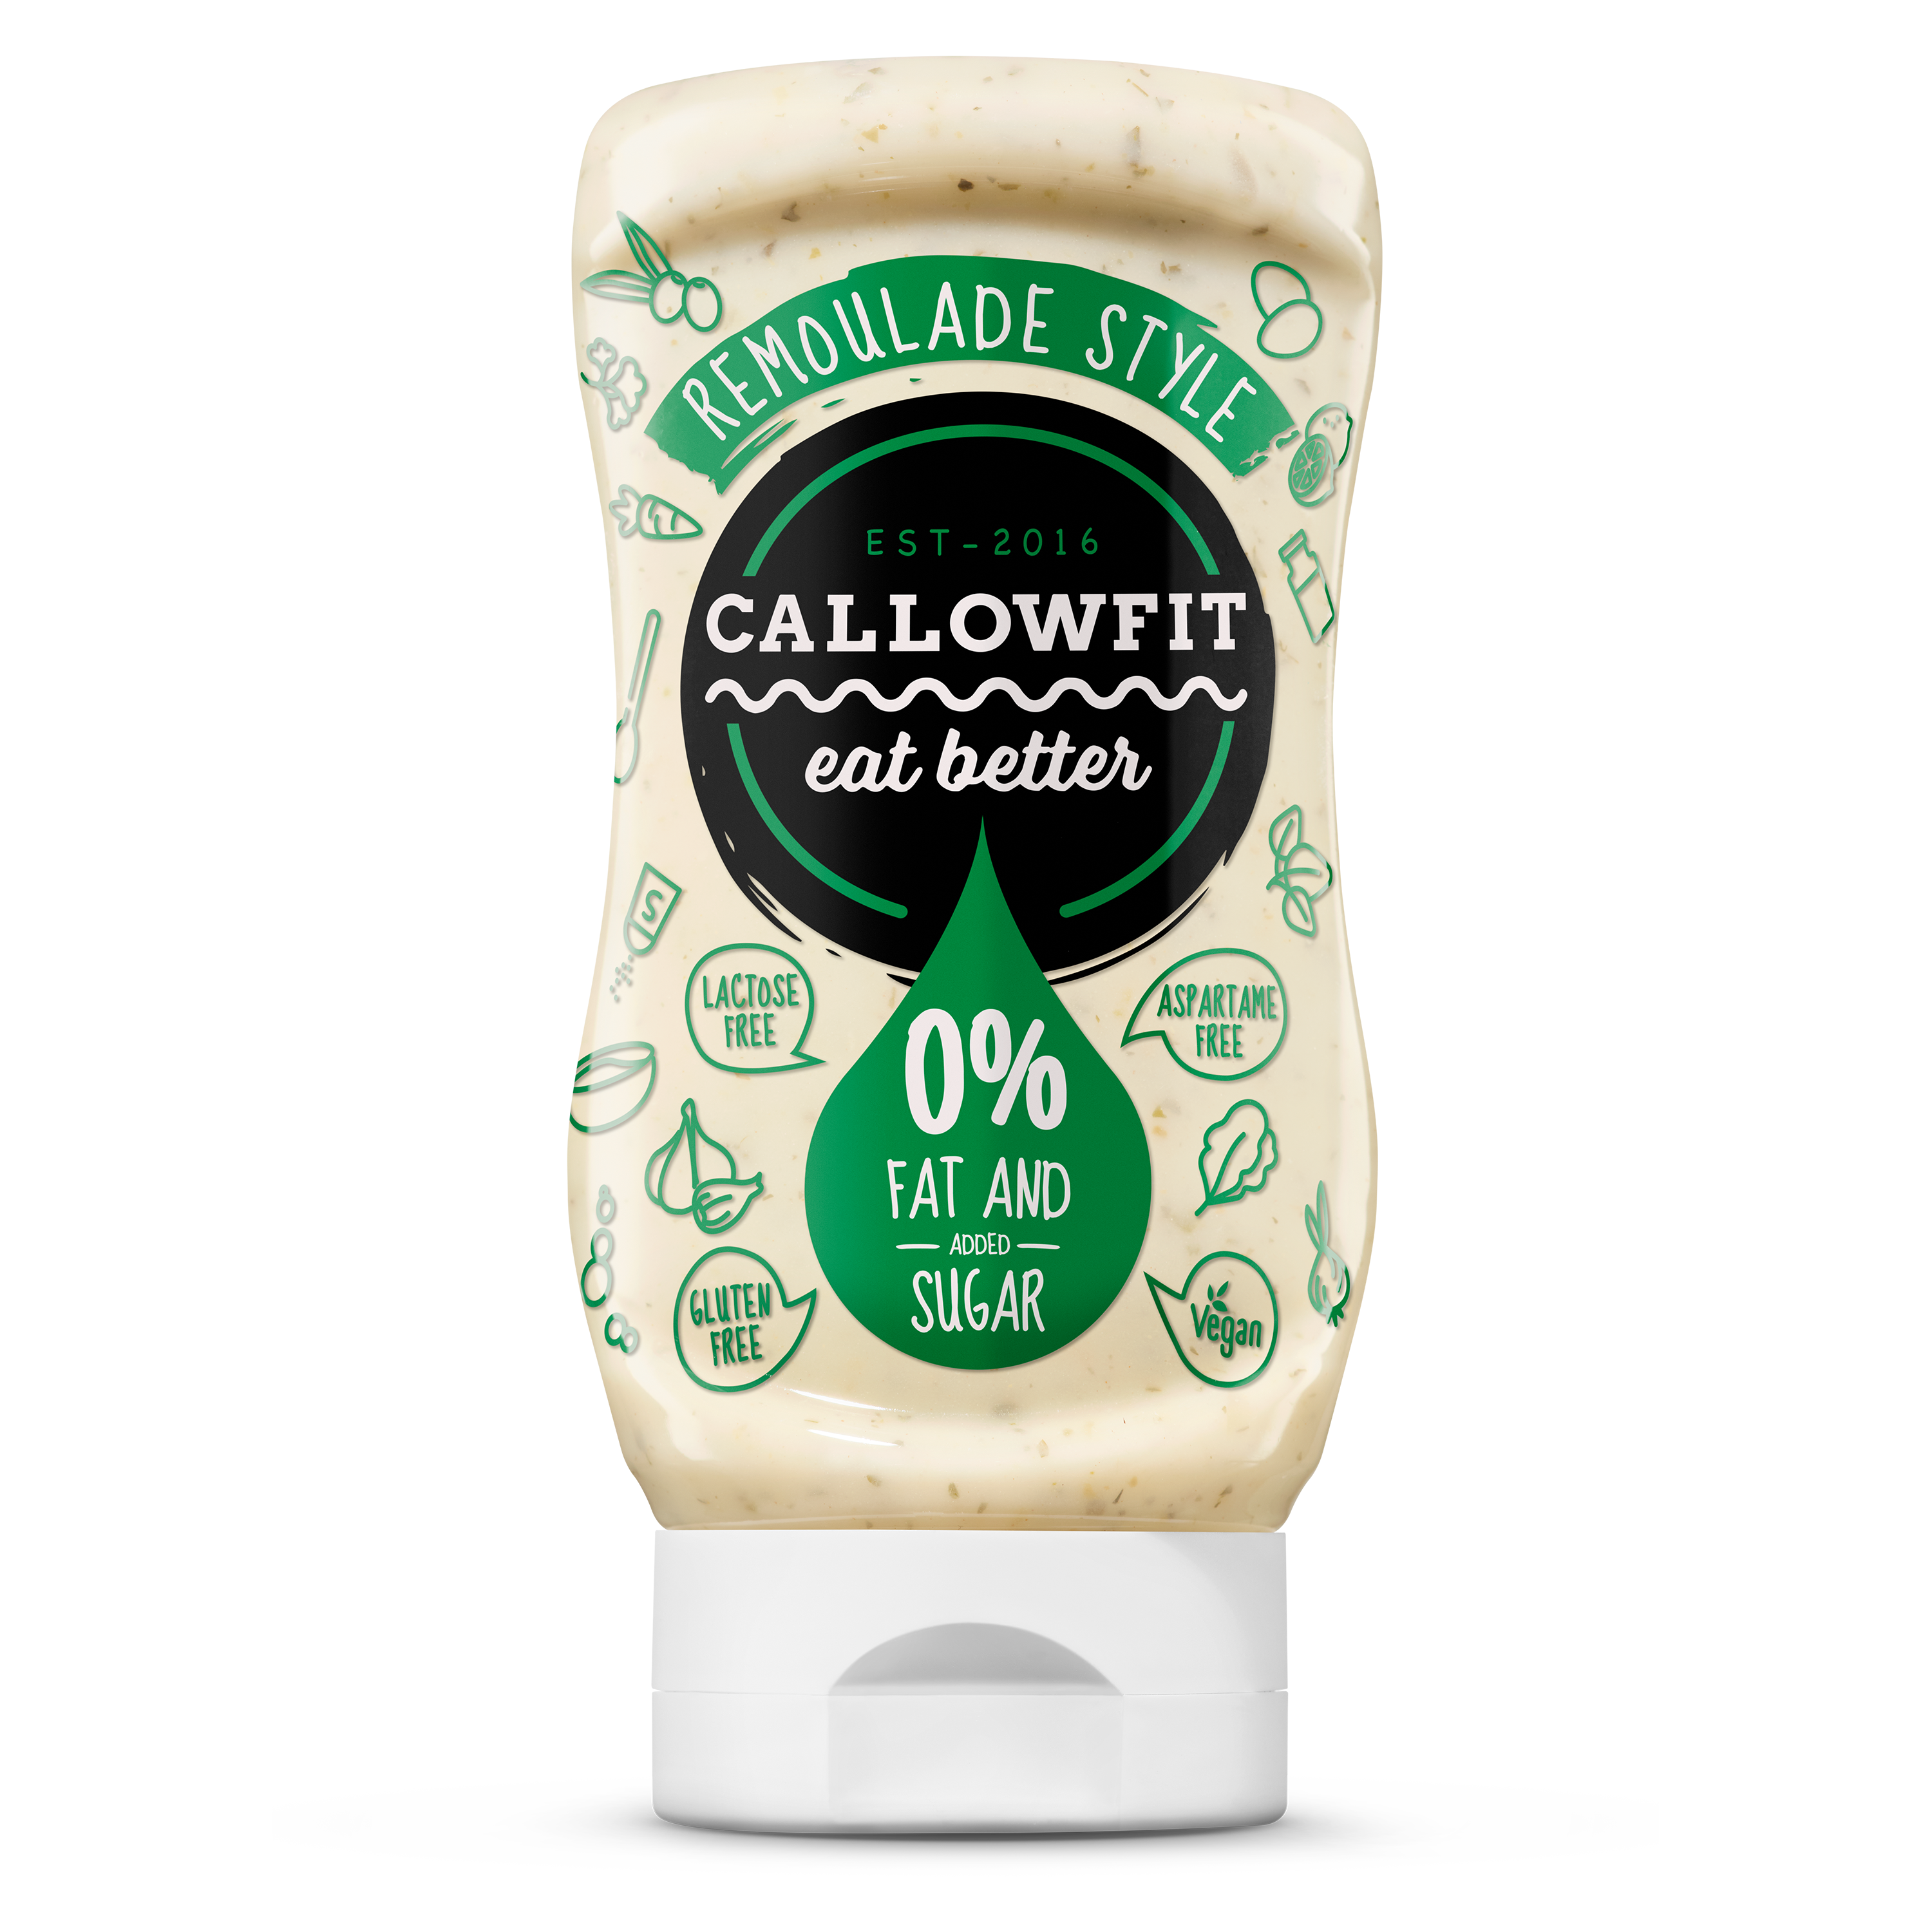 CALLOWFIT Sauce im Geschmack Remoulade Style mit 0% Fett und Zucker in einer Tube mit bunten Aufdruck.